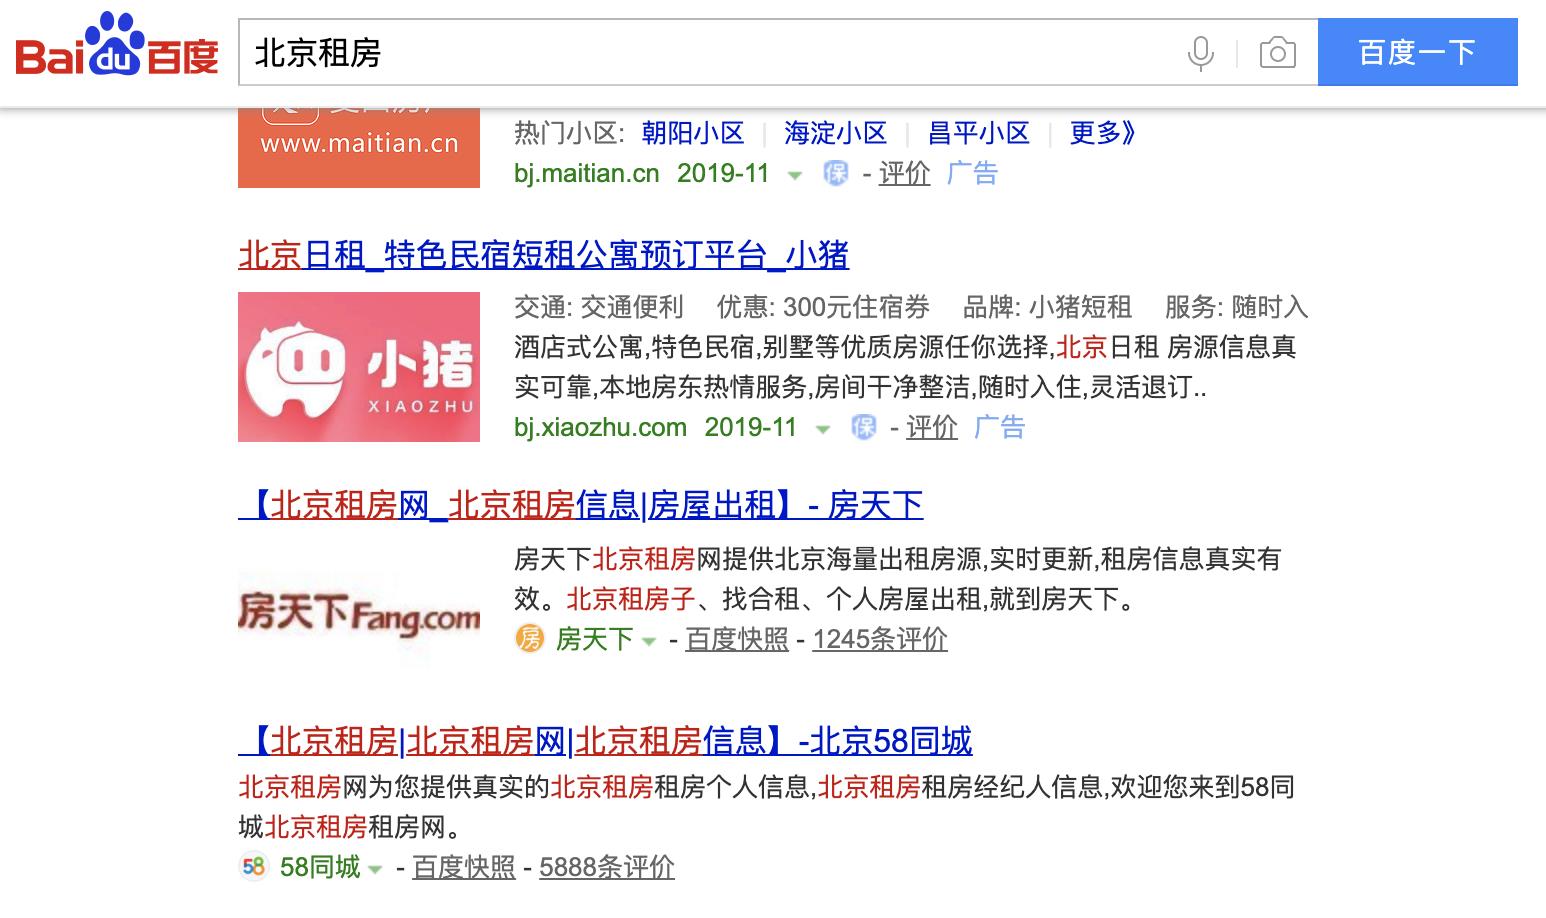 58同城北京租房的标题书写示例图